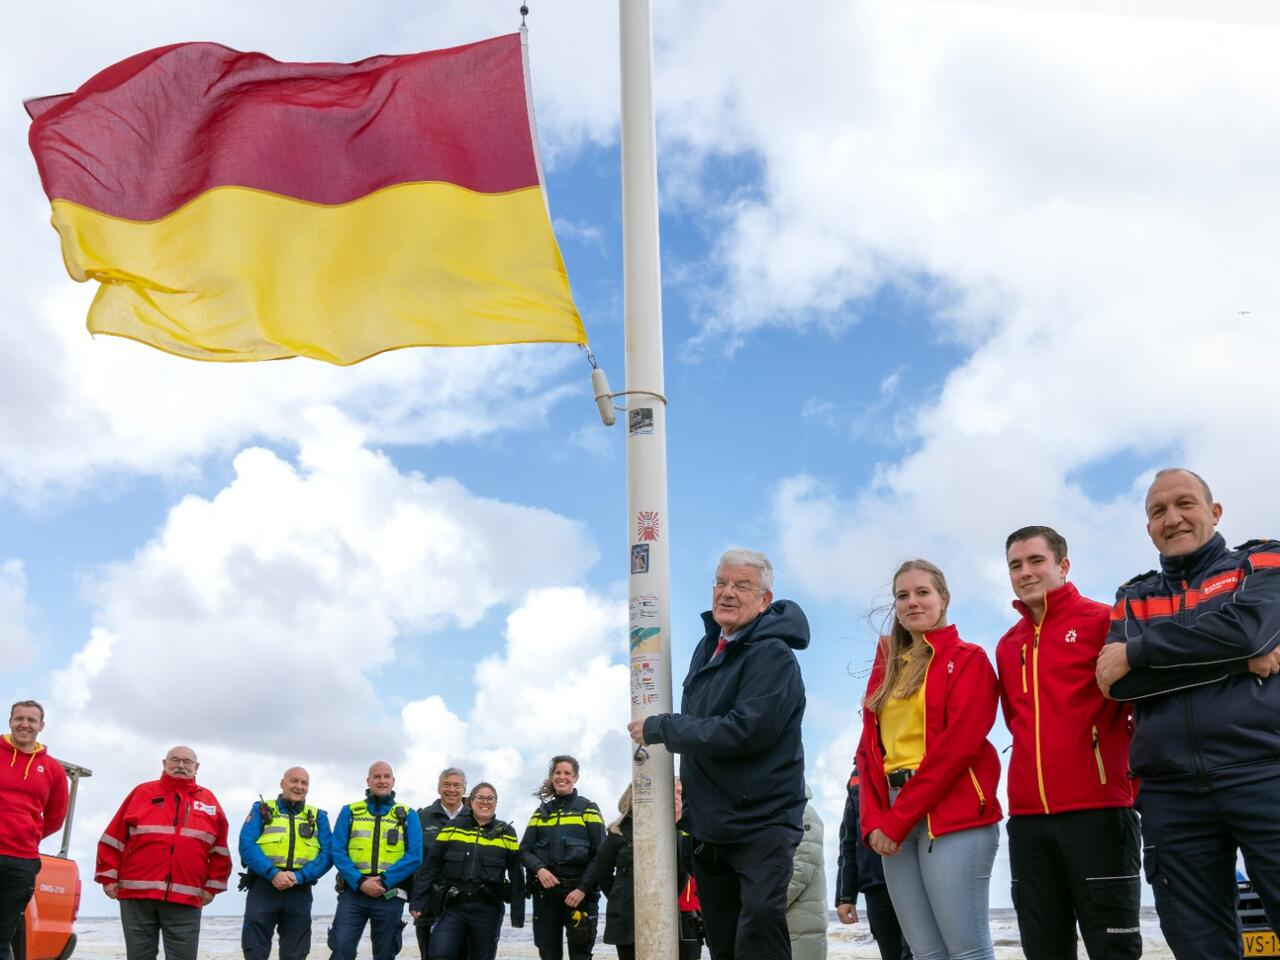 Burgemeester Van Zanen hijst de rood met gele vlag op het strand. Om hem heen staan collega's van de politie, brandweer en lifeguards